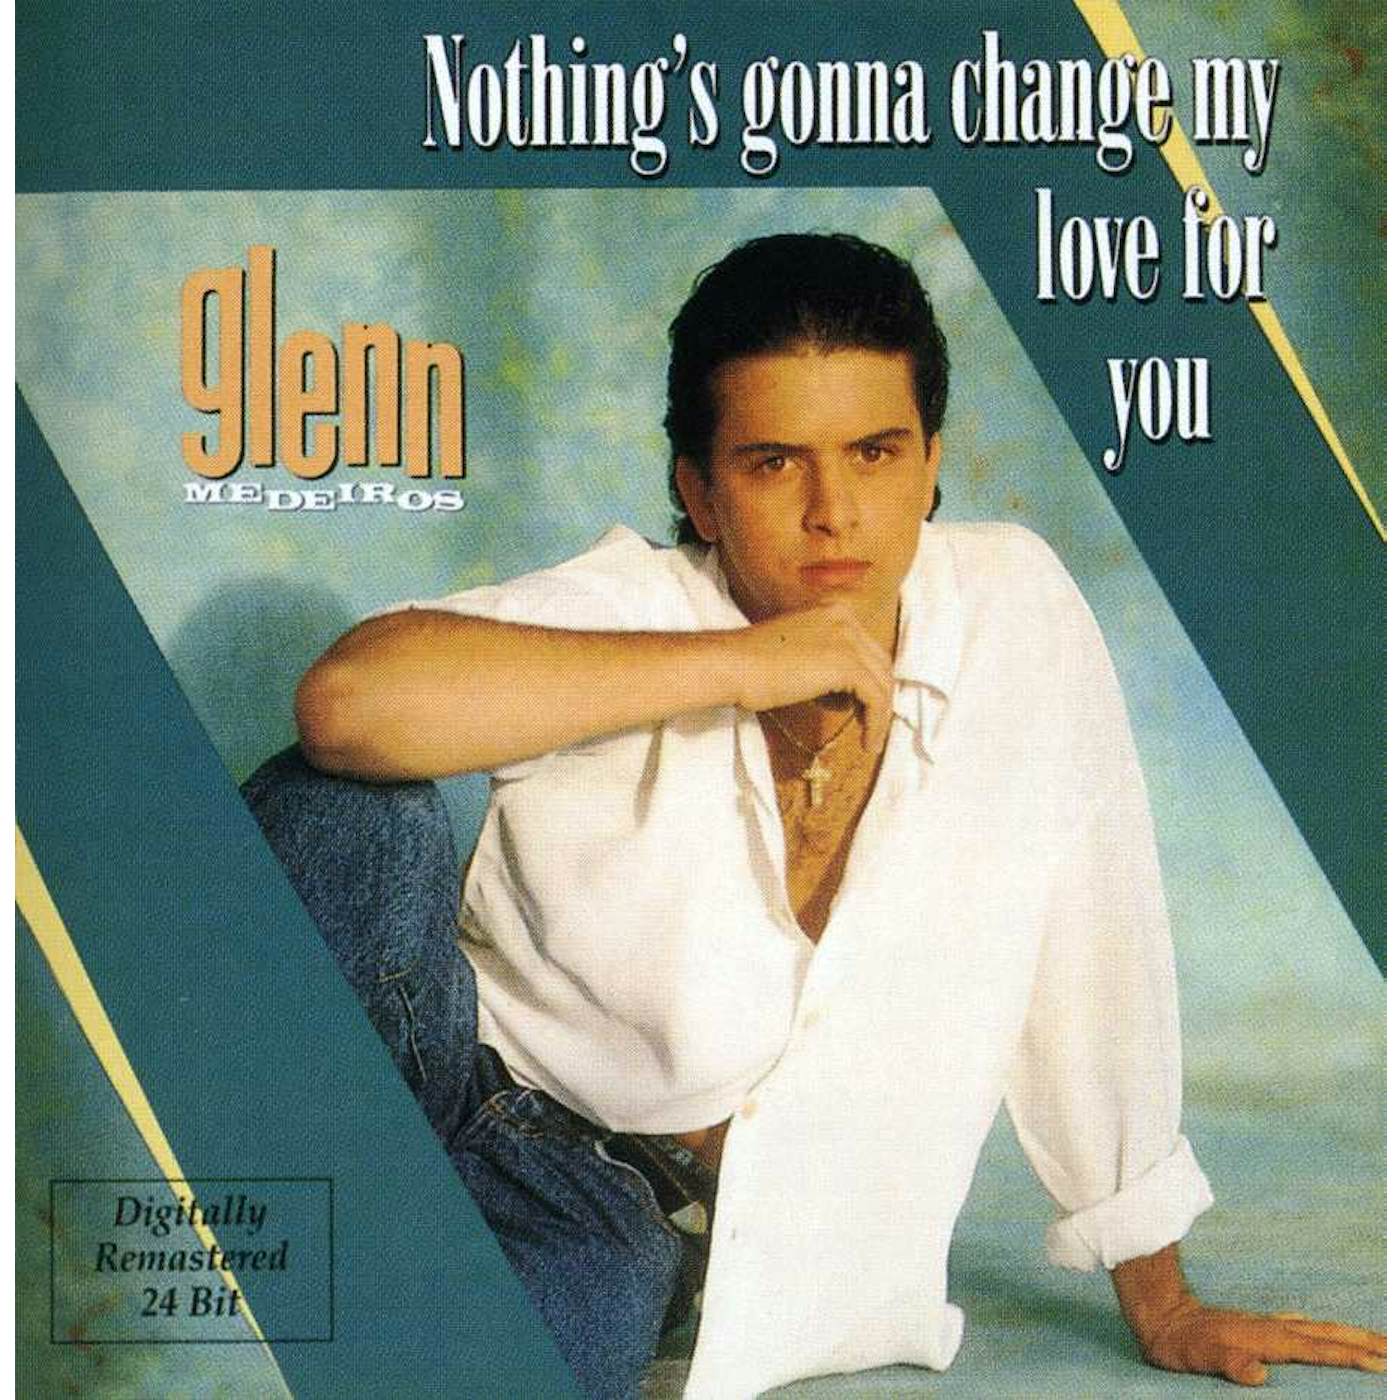 Glenn Medeiros NOTHING'S GONNA CHANGE MY LOVE FOR YOU CD